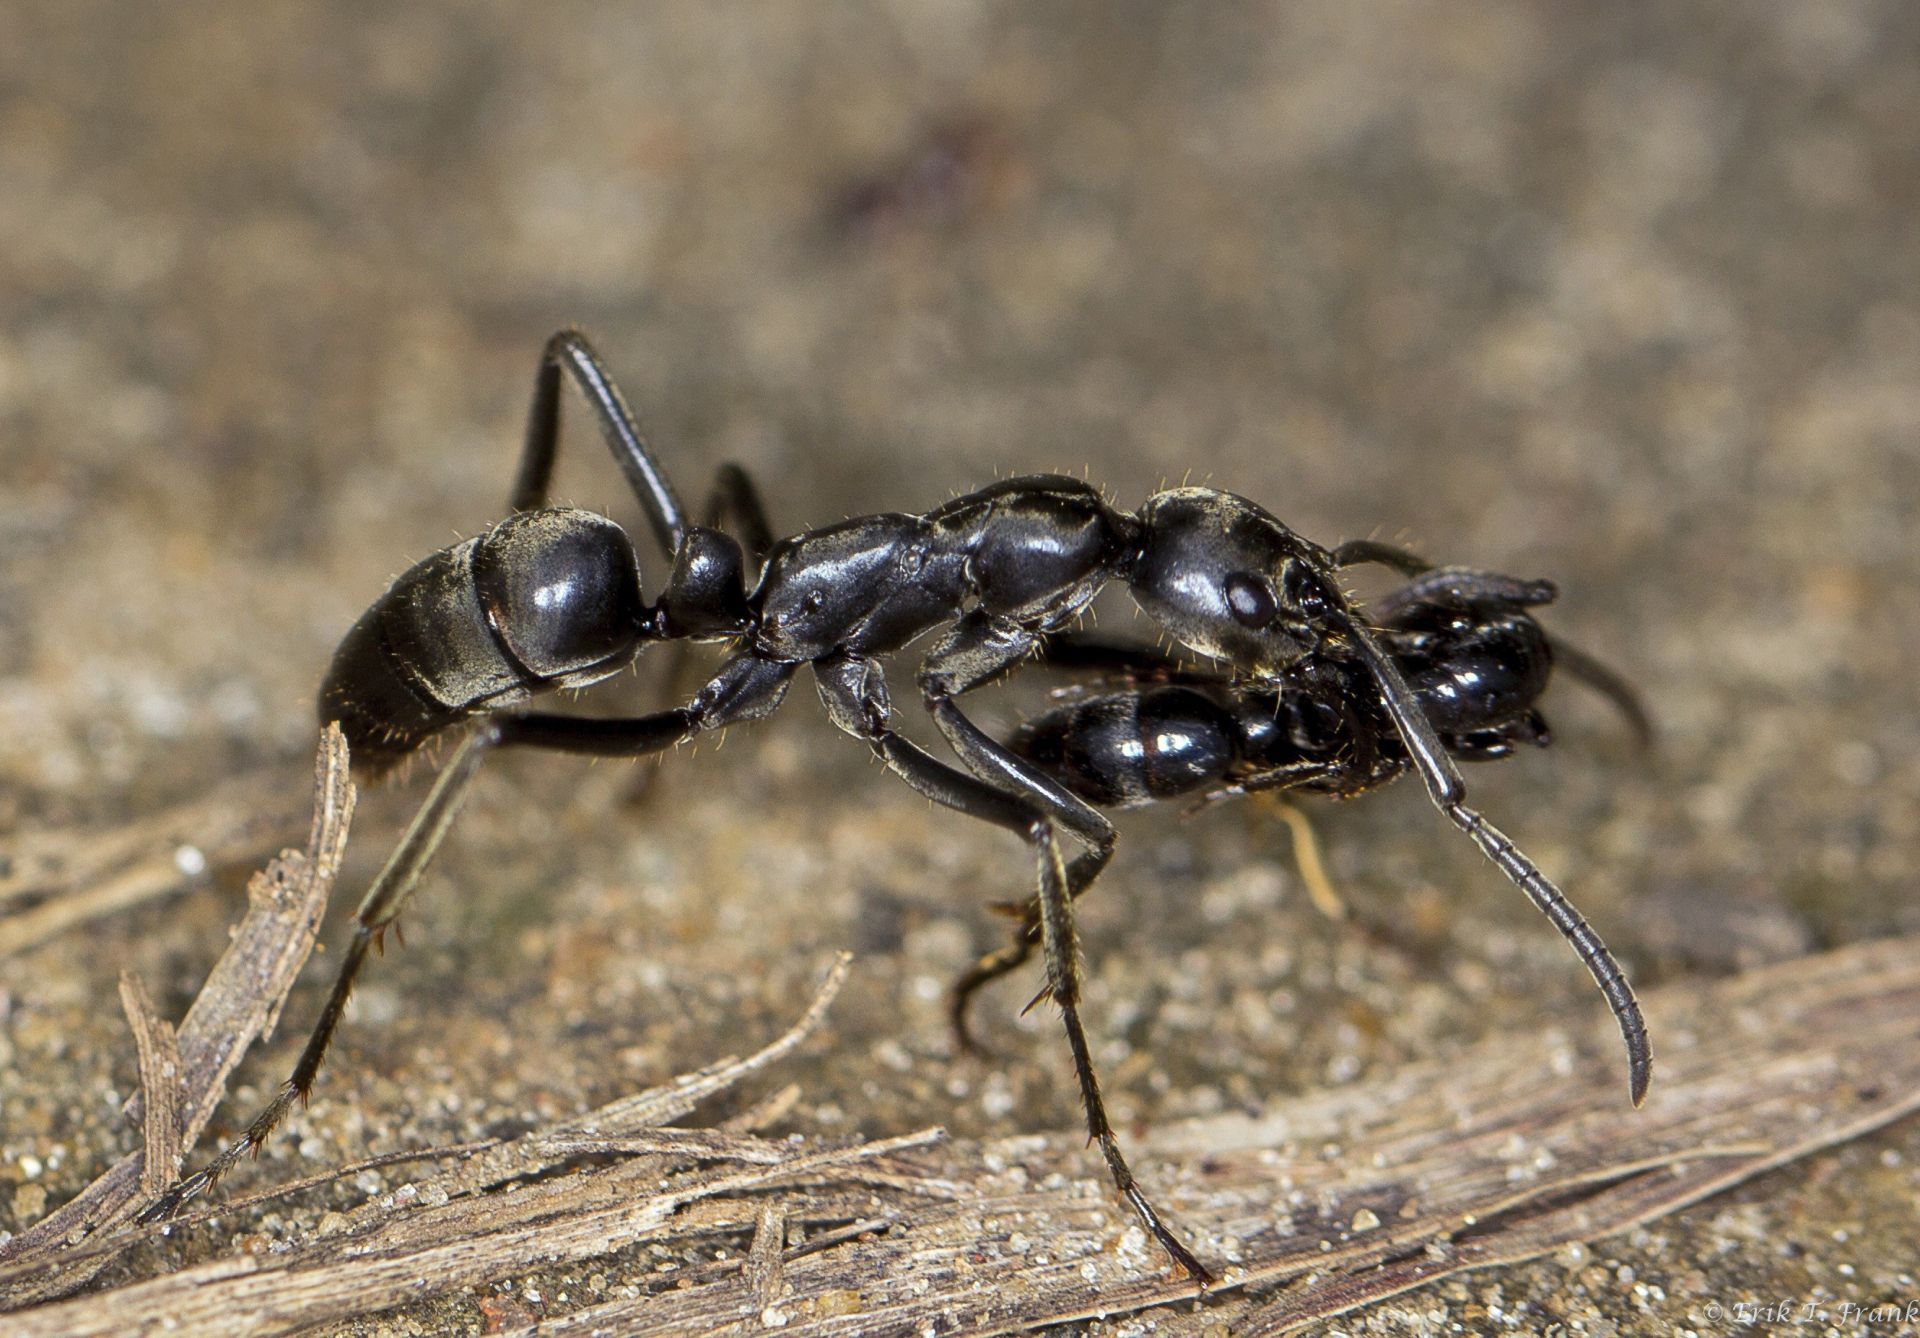 Las hormigas matabele socorren y tratan a sus semejantes heridas en batalla